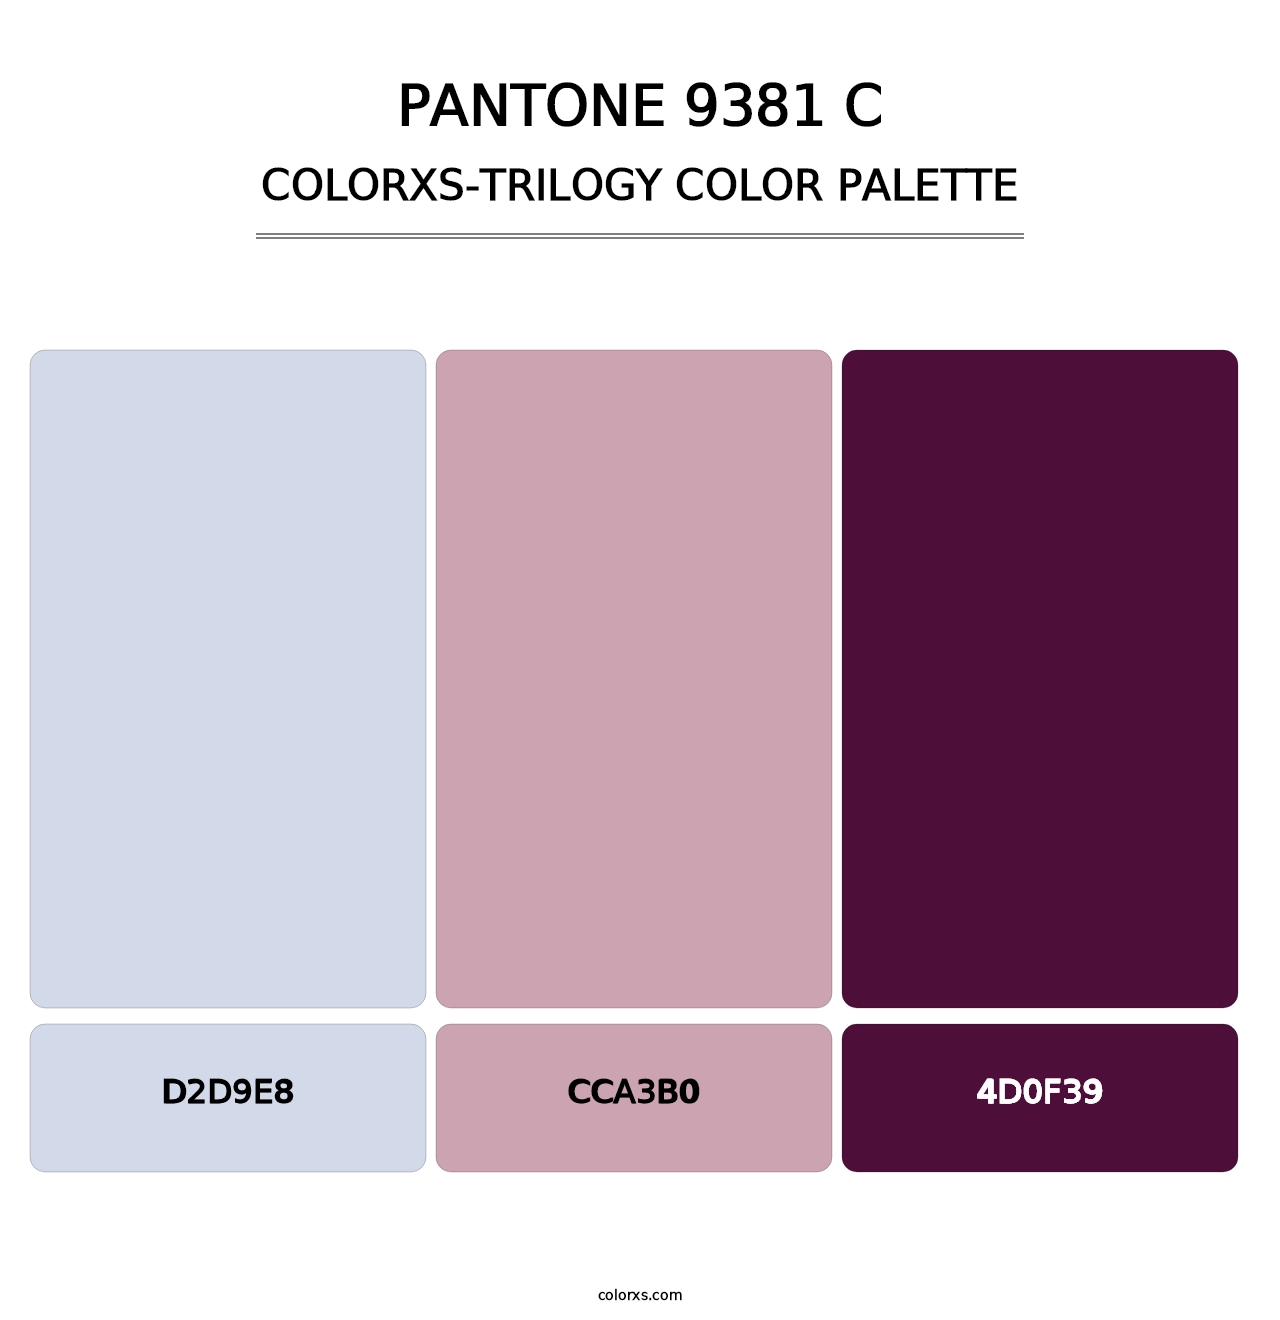 PANTONE 9381 C - Colorxs Trilogy Palette